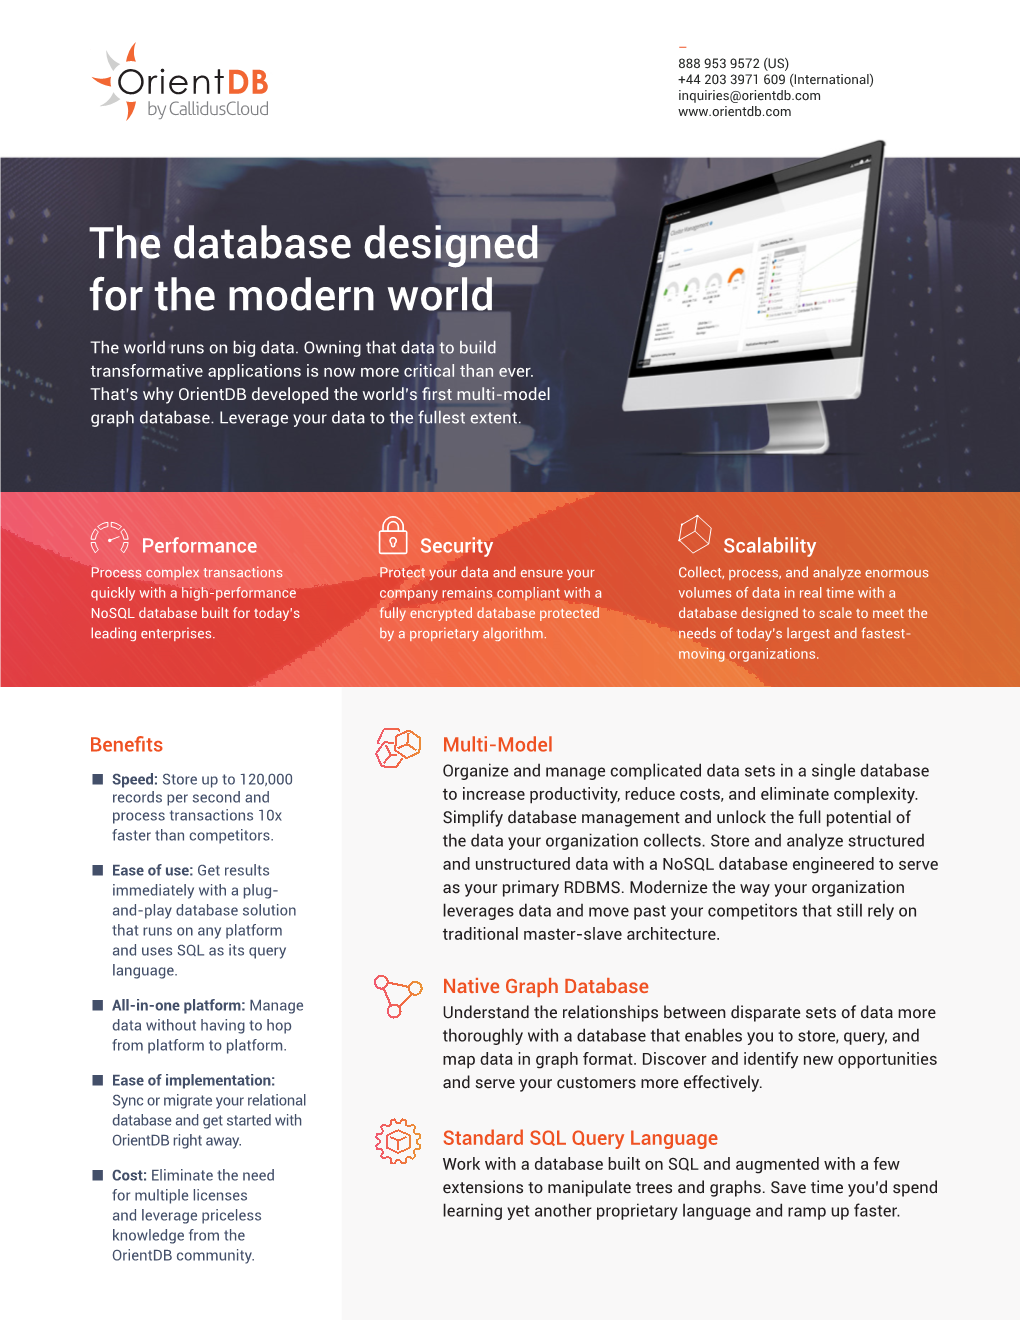 The Database Designed for the Modern World